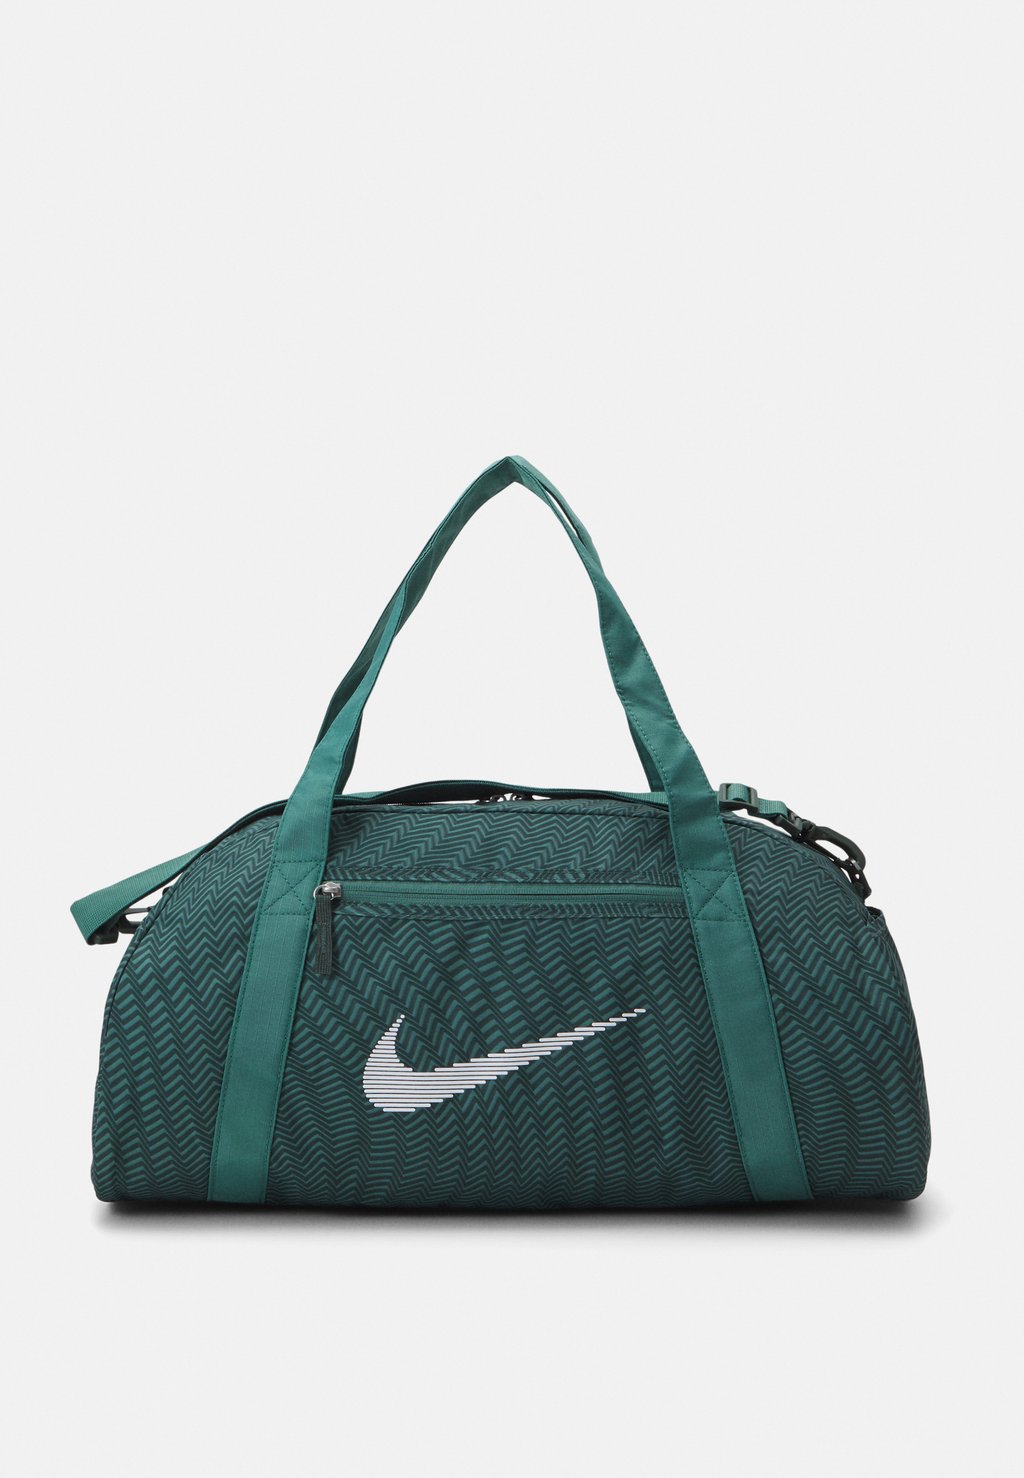 Спортивная сумка GYM CLUB Nike, цвет vintage green/bicoastal/white сумка спортивная nike gym club retro серебристый